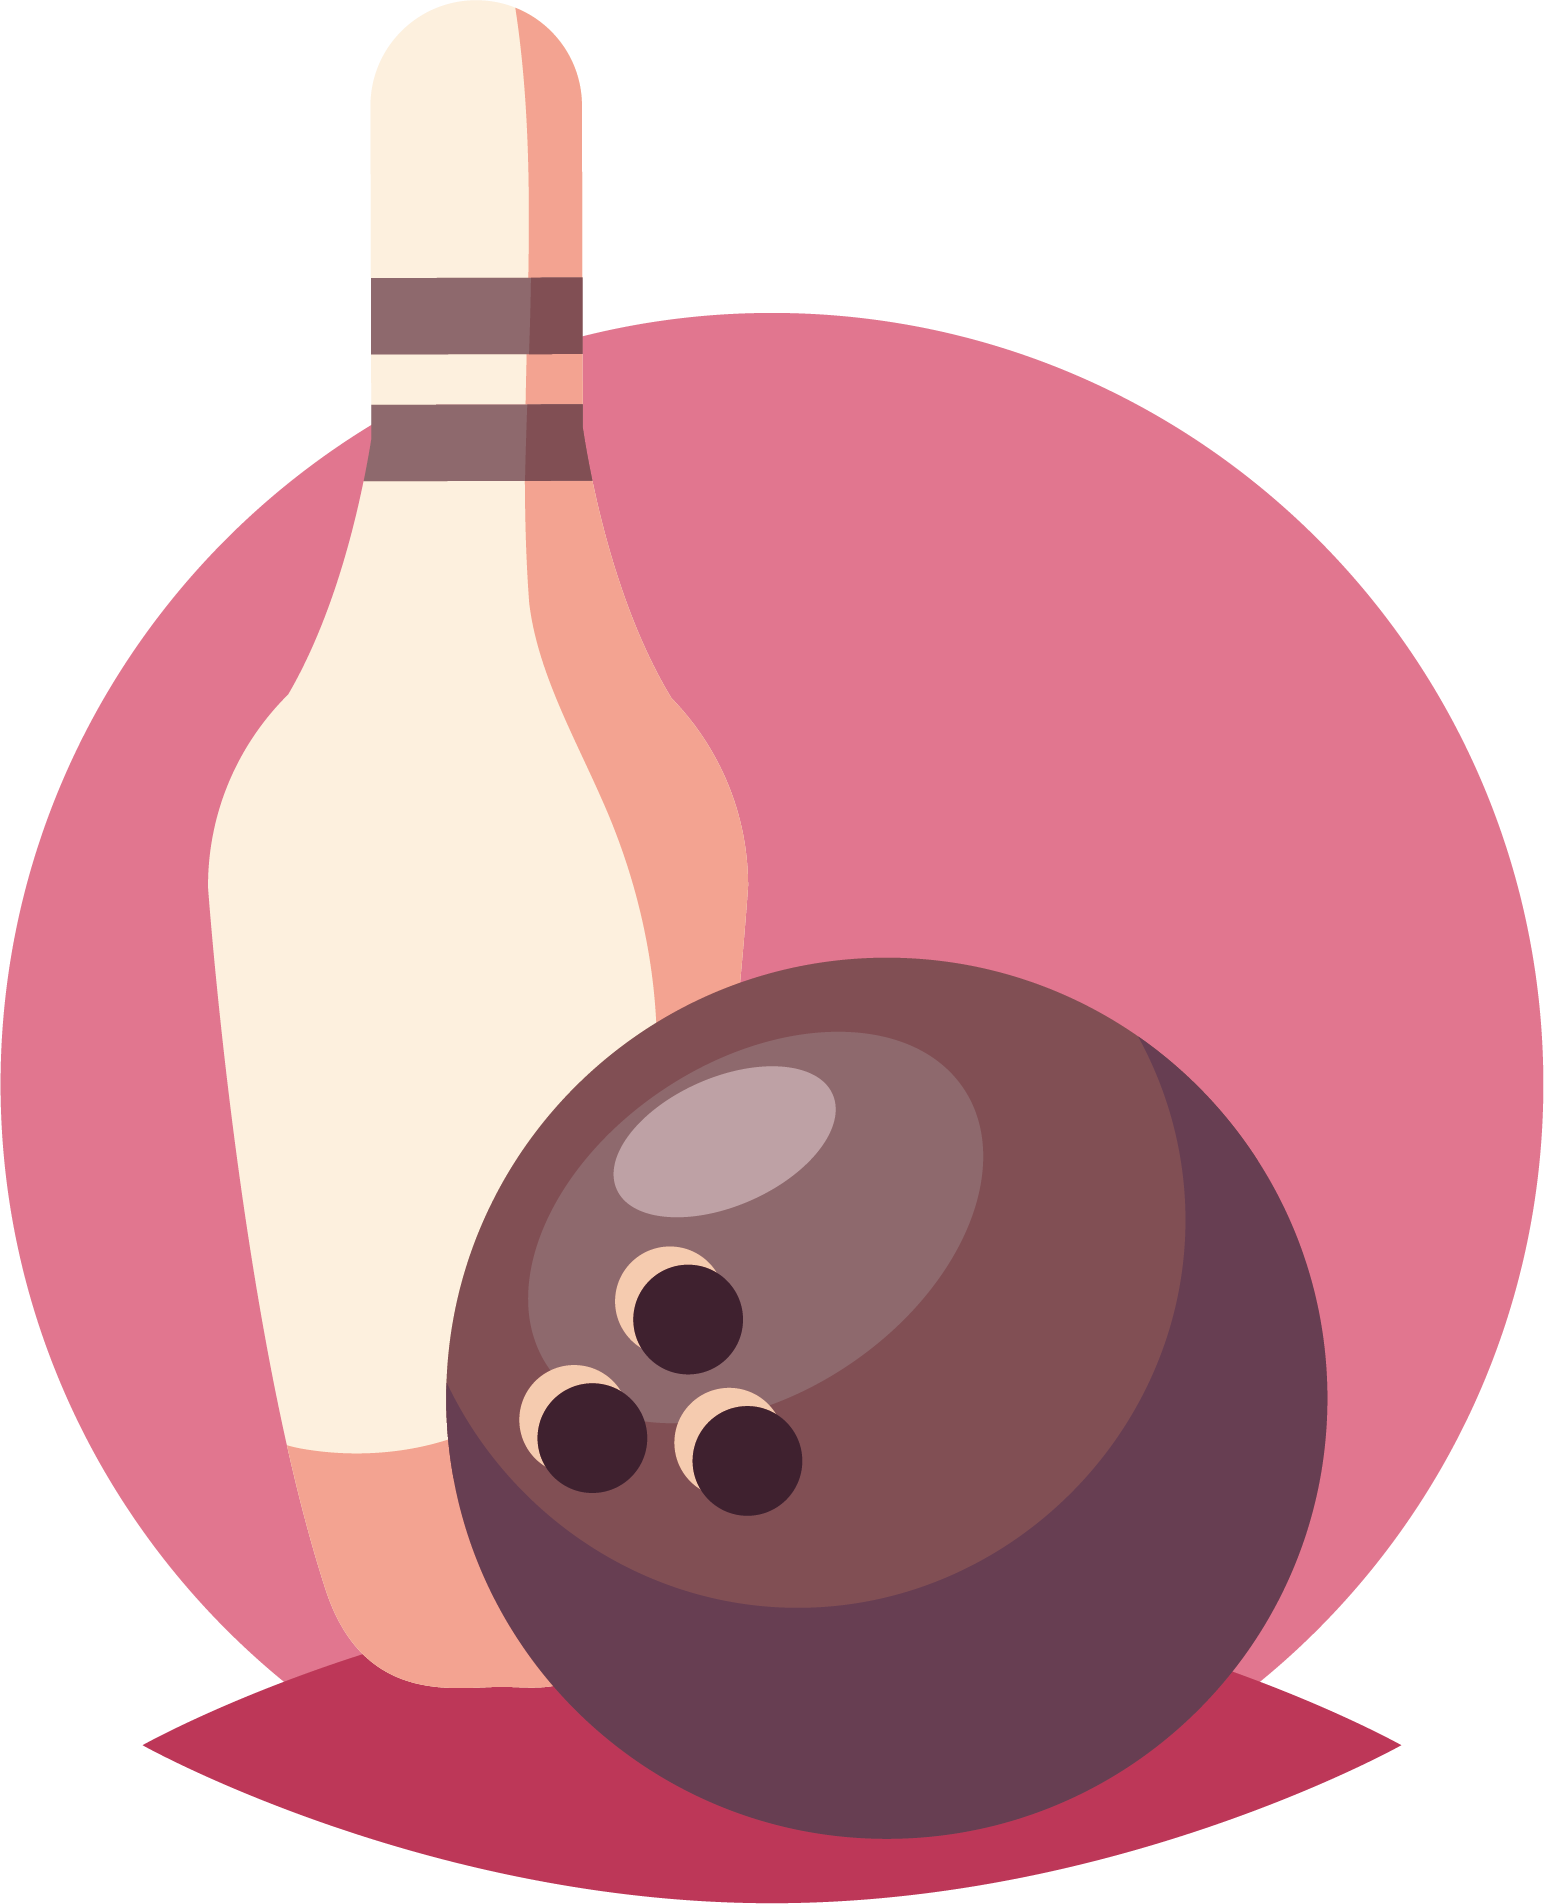 Bowling Ball Ten-pin Bowling Bowling Pin Clip Art - Bowling Ball Ten-pin Bowling Bowling Pin Clip Art (1544x1904)